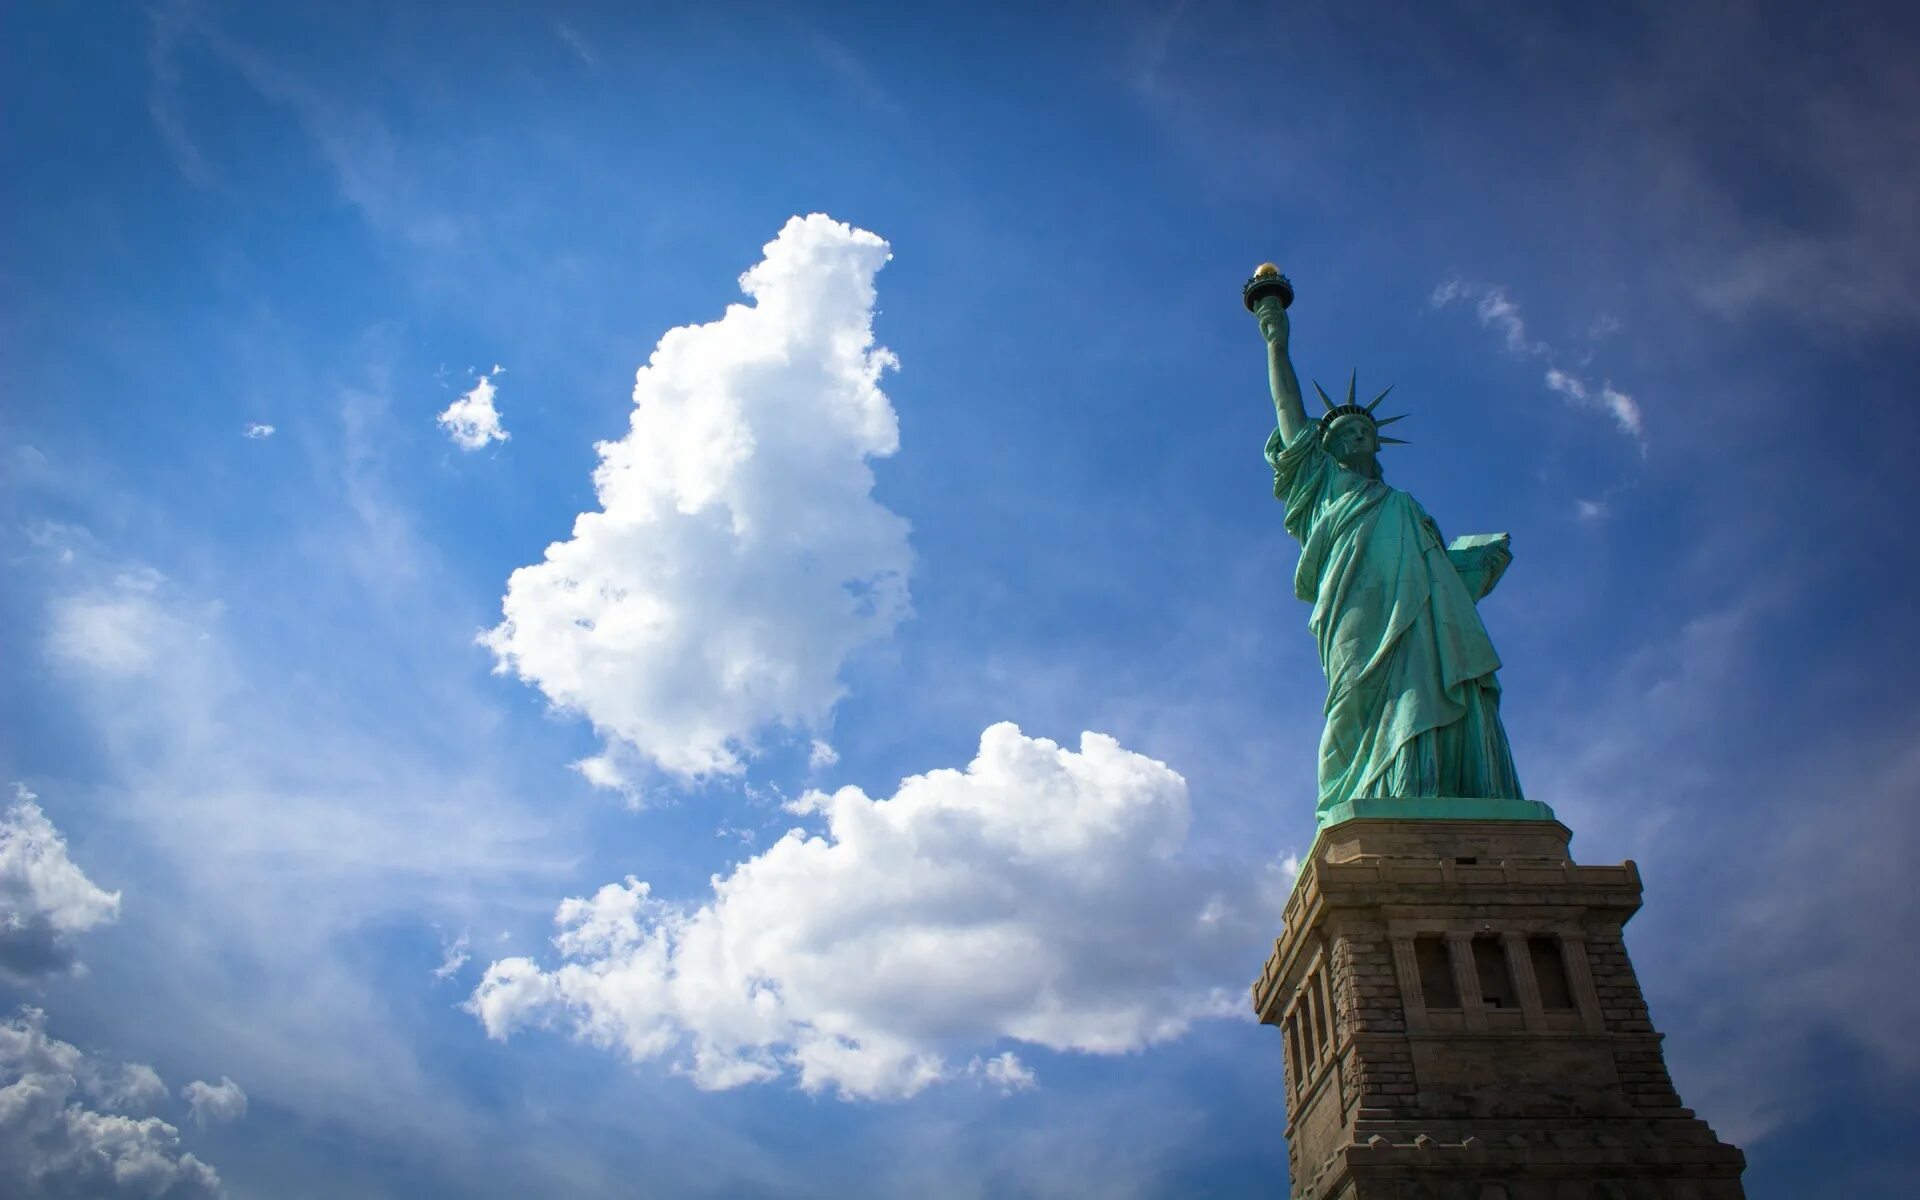 Свобода в различных странах. Статуя свободы Нью-Йорк. НЬЮЙОРК статцуя свободы. Статуя свободыфв НЬЮЙОРКЕ. НЬЮЙ РРК статуя свободы.